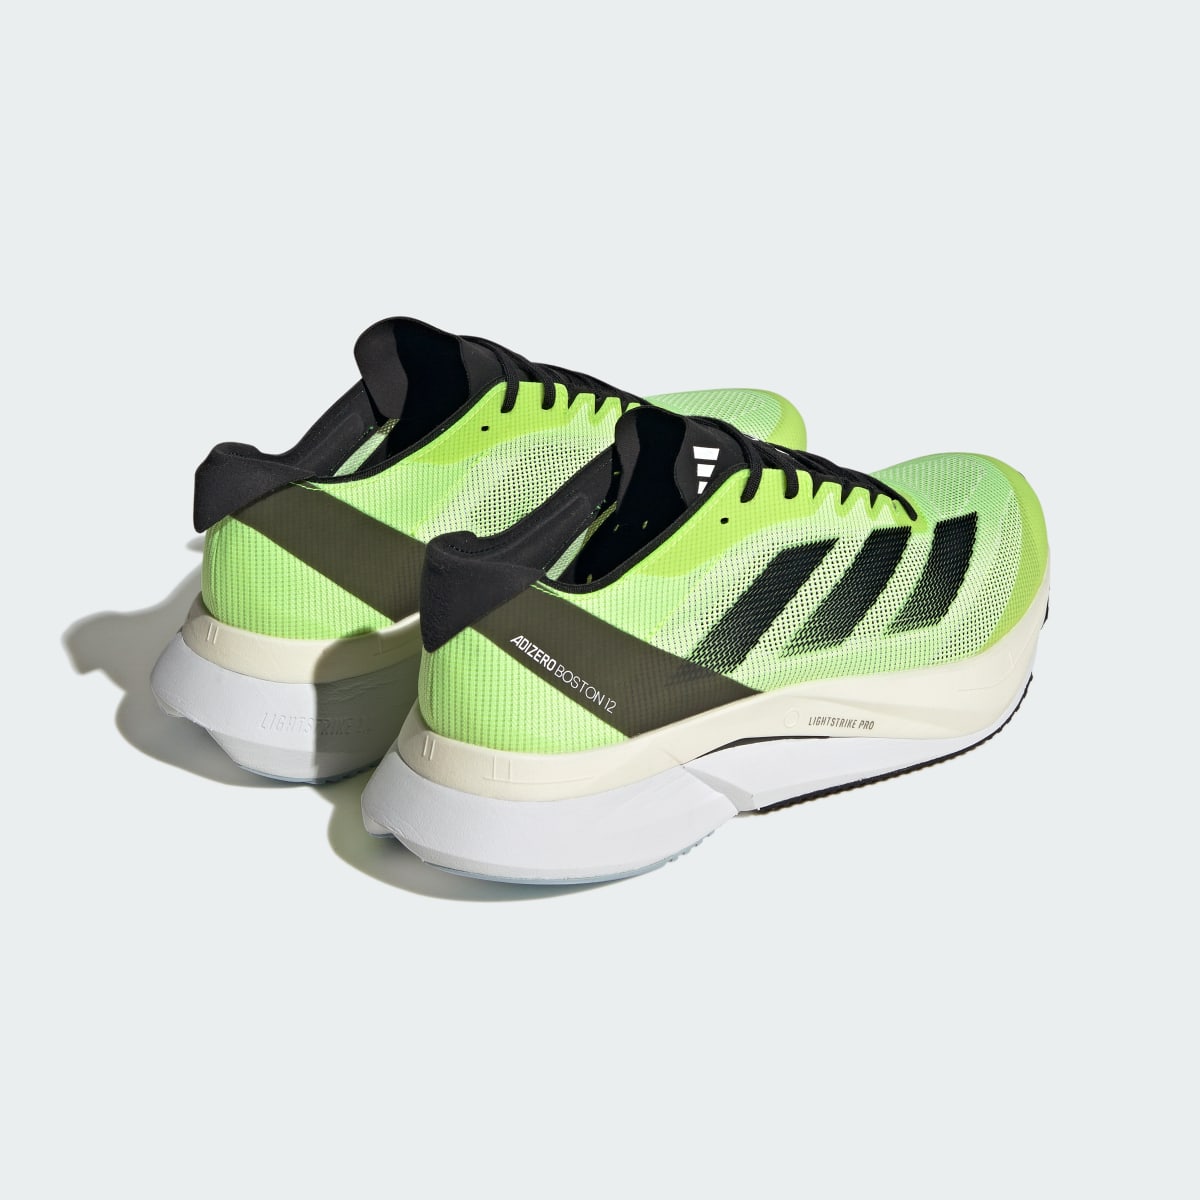 Adidas Adizero Boston 12 Running Shoes. 13